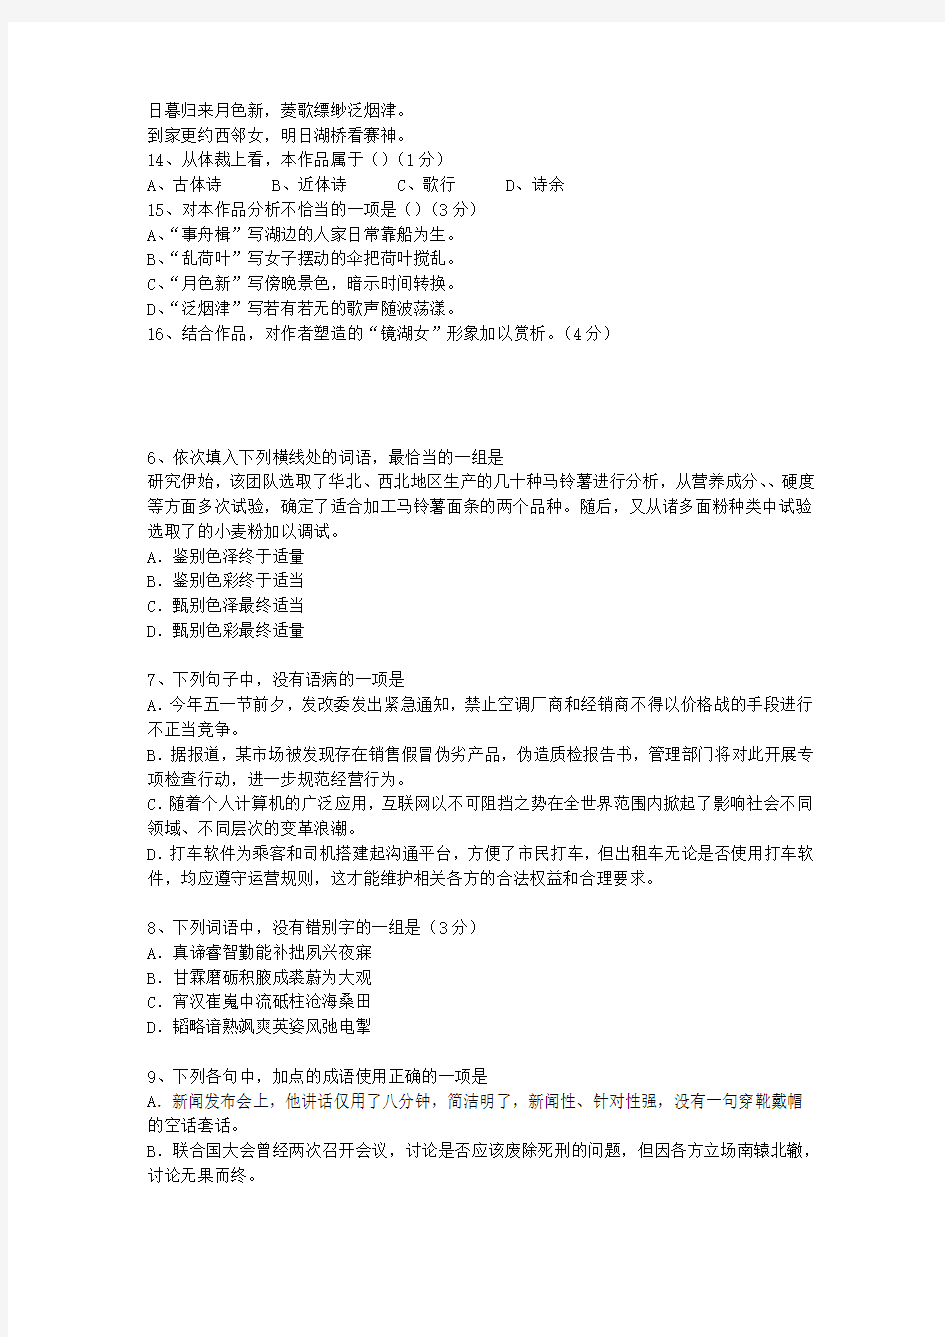 2015河南省高考语文试题及详细答案最新版本图文